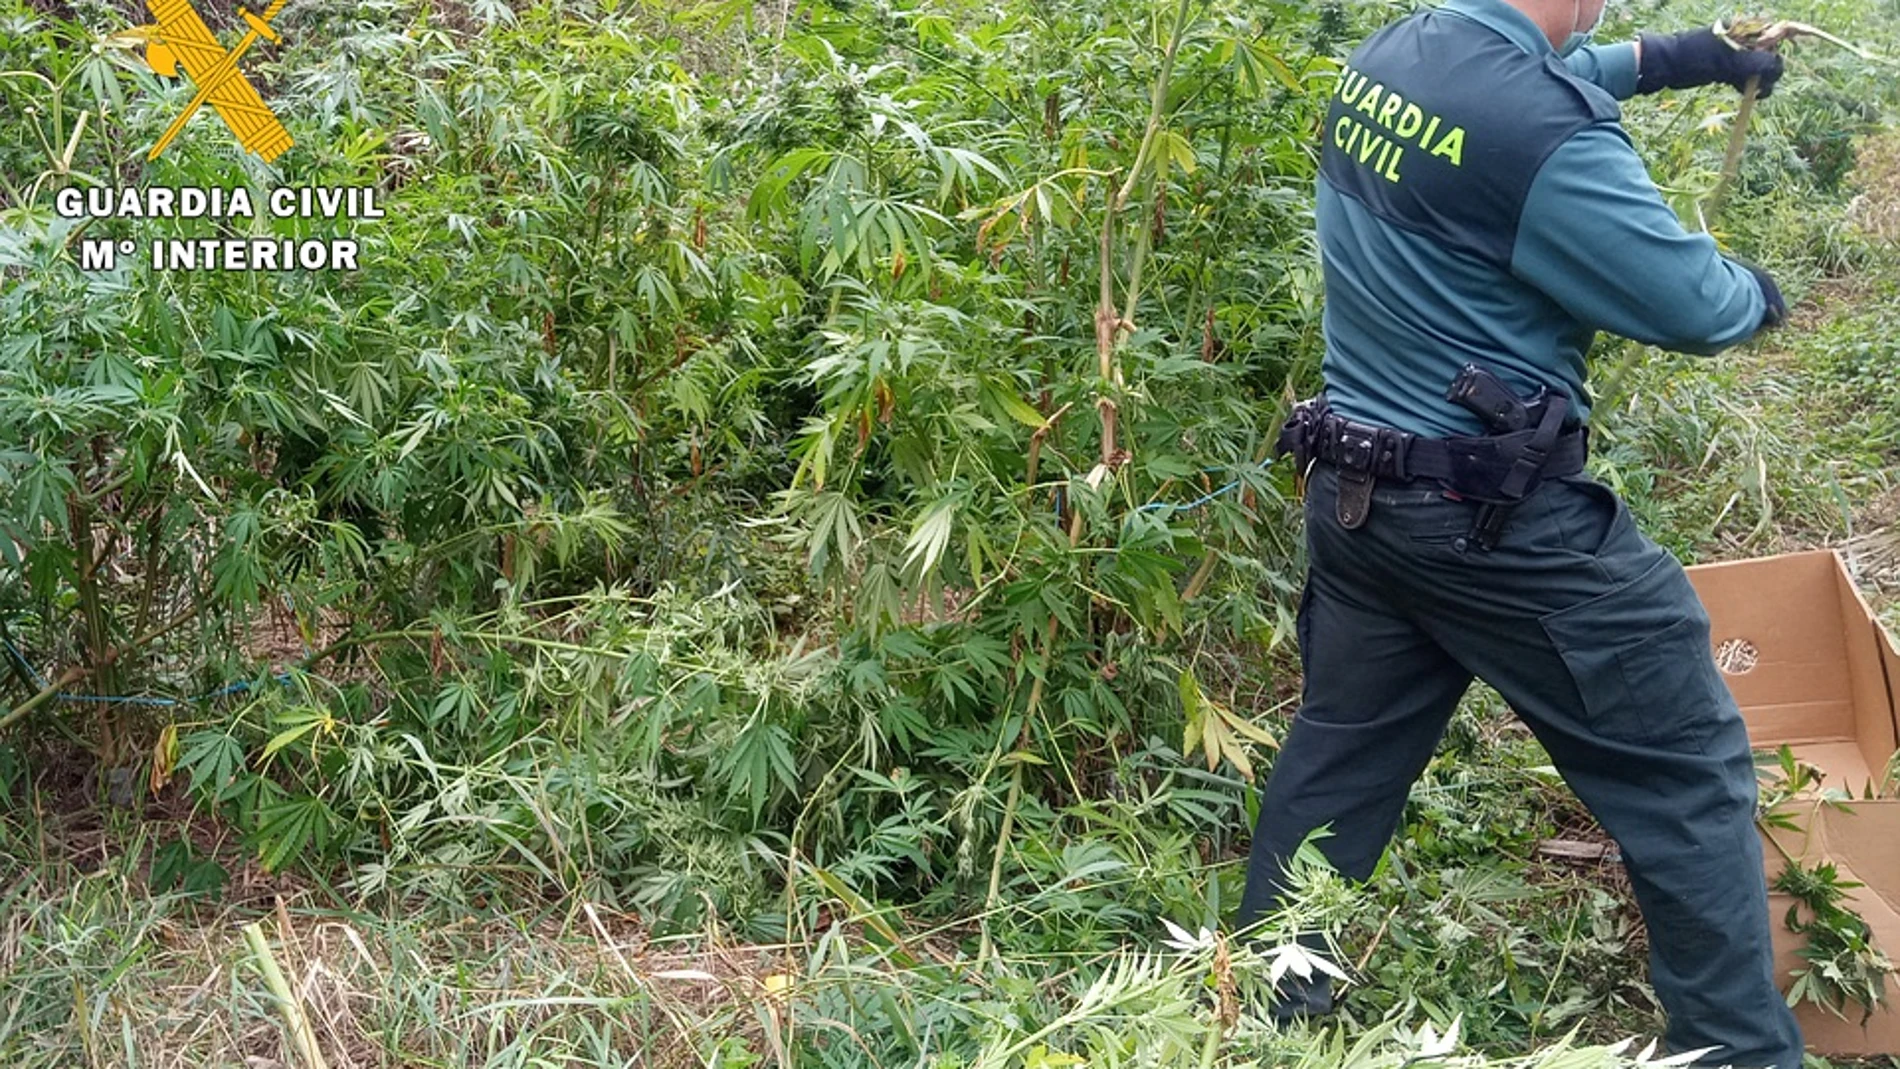 Plantación de marihuana descubierta por la Guardia Civil en un paraje de La Bureba, en la provincia de Burgos.